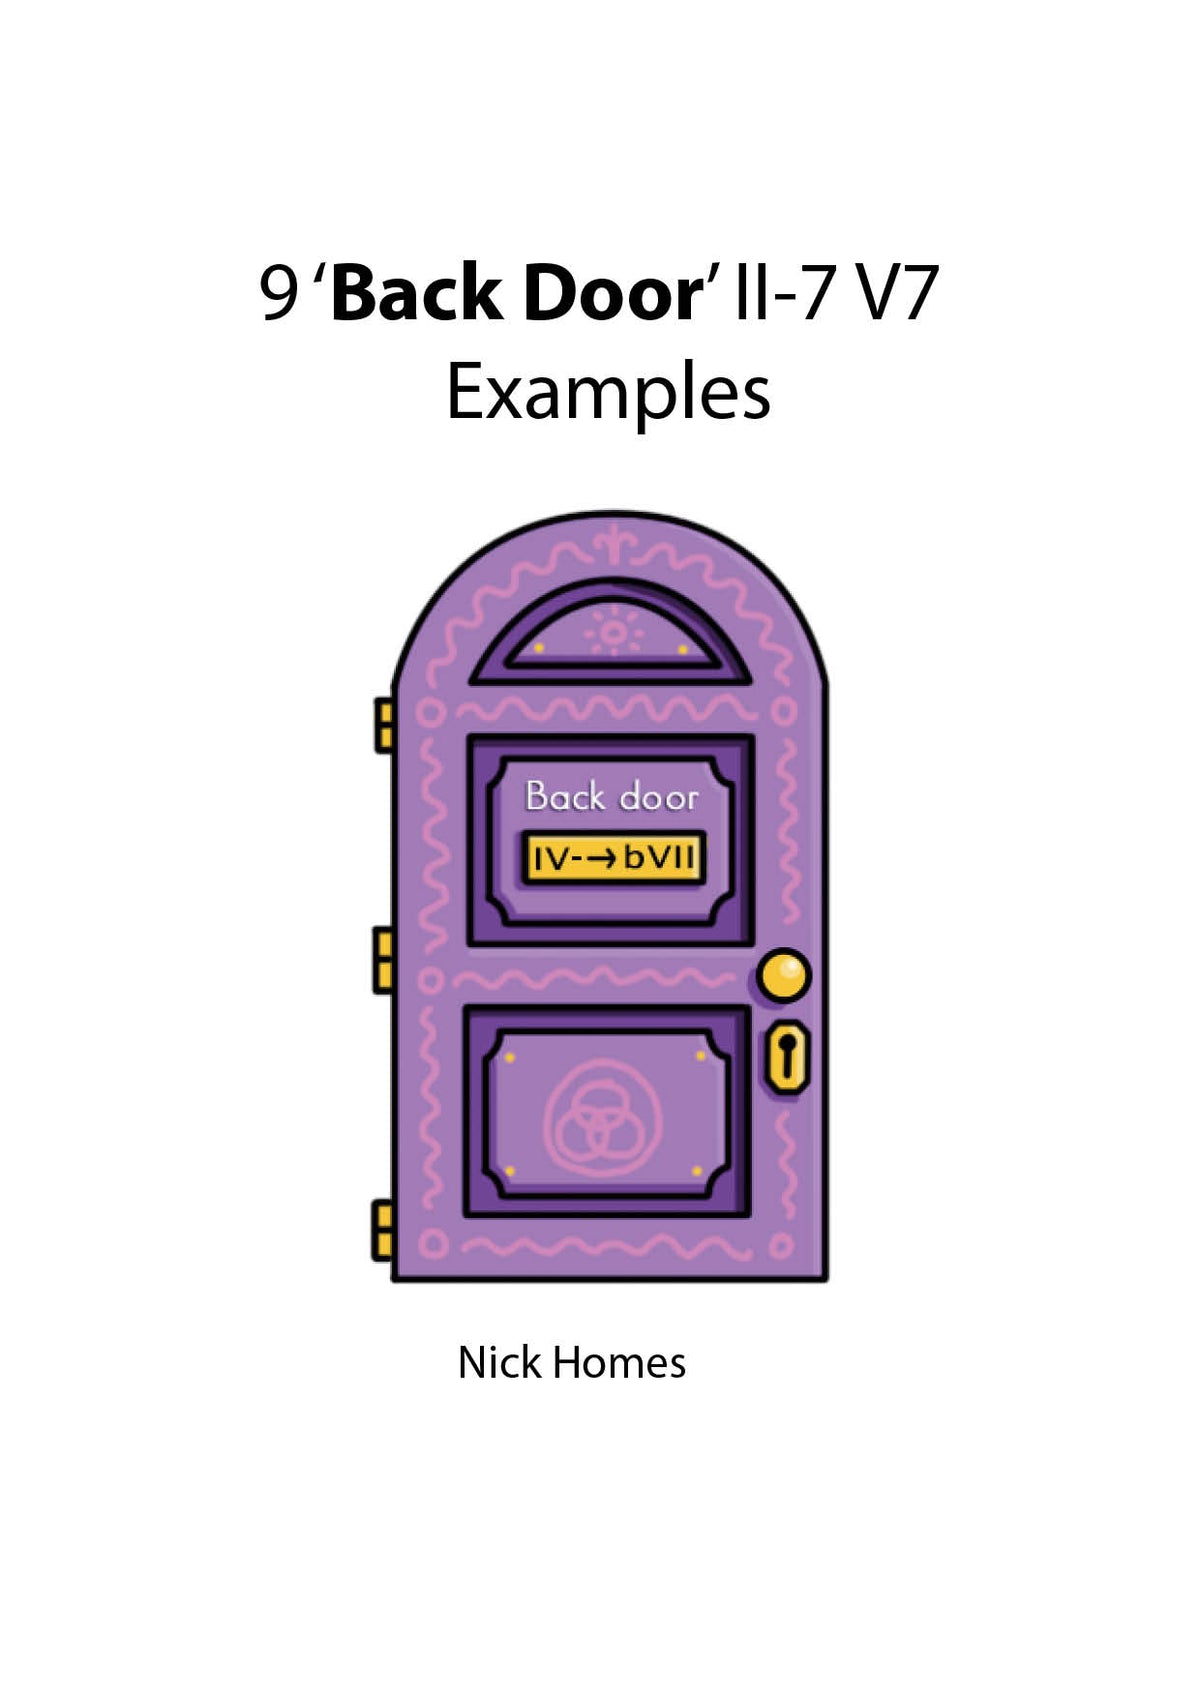 9 back door II V examples  -jazz duets